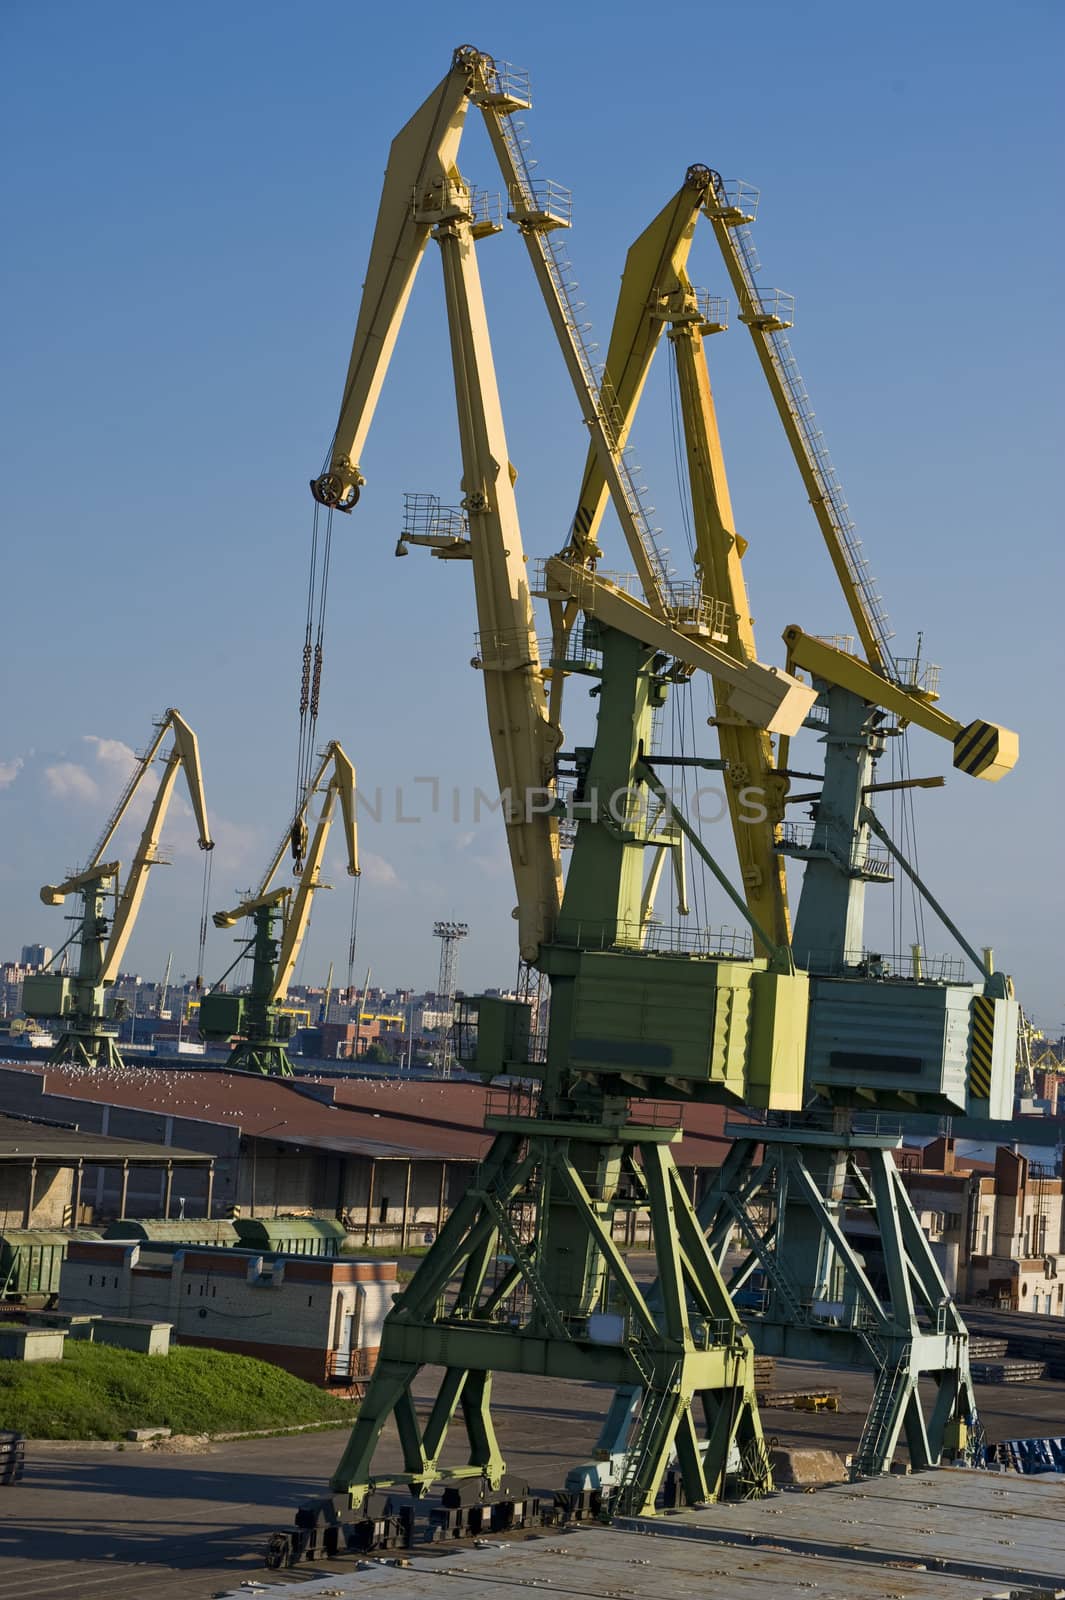 Cranes in the cargo port in the Sankt Petersburg, Russia